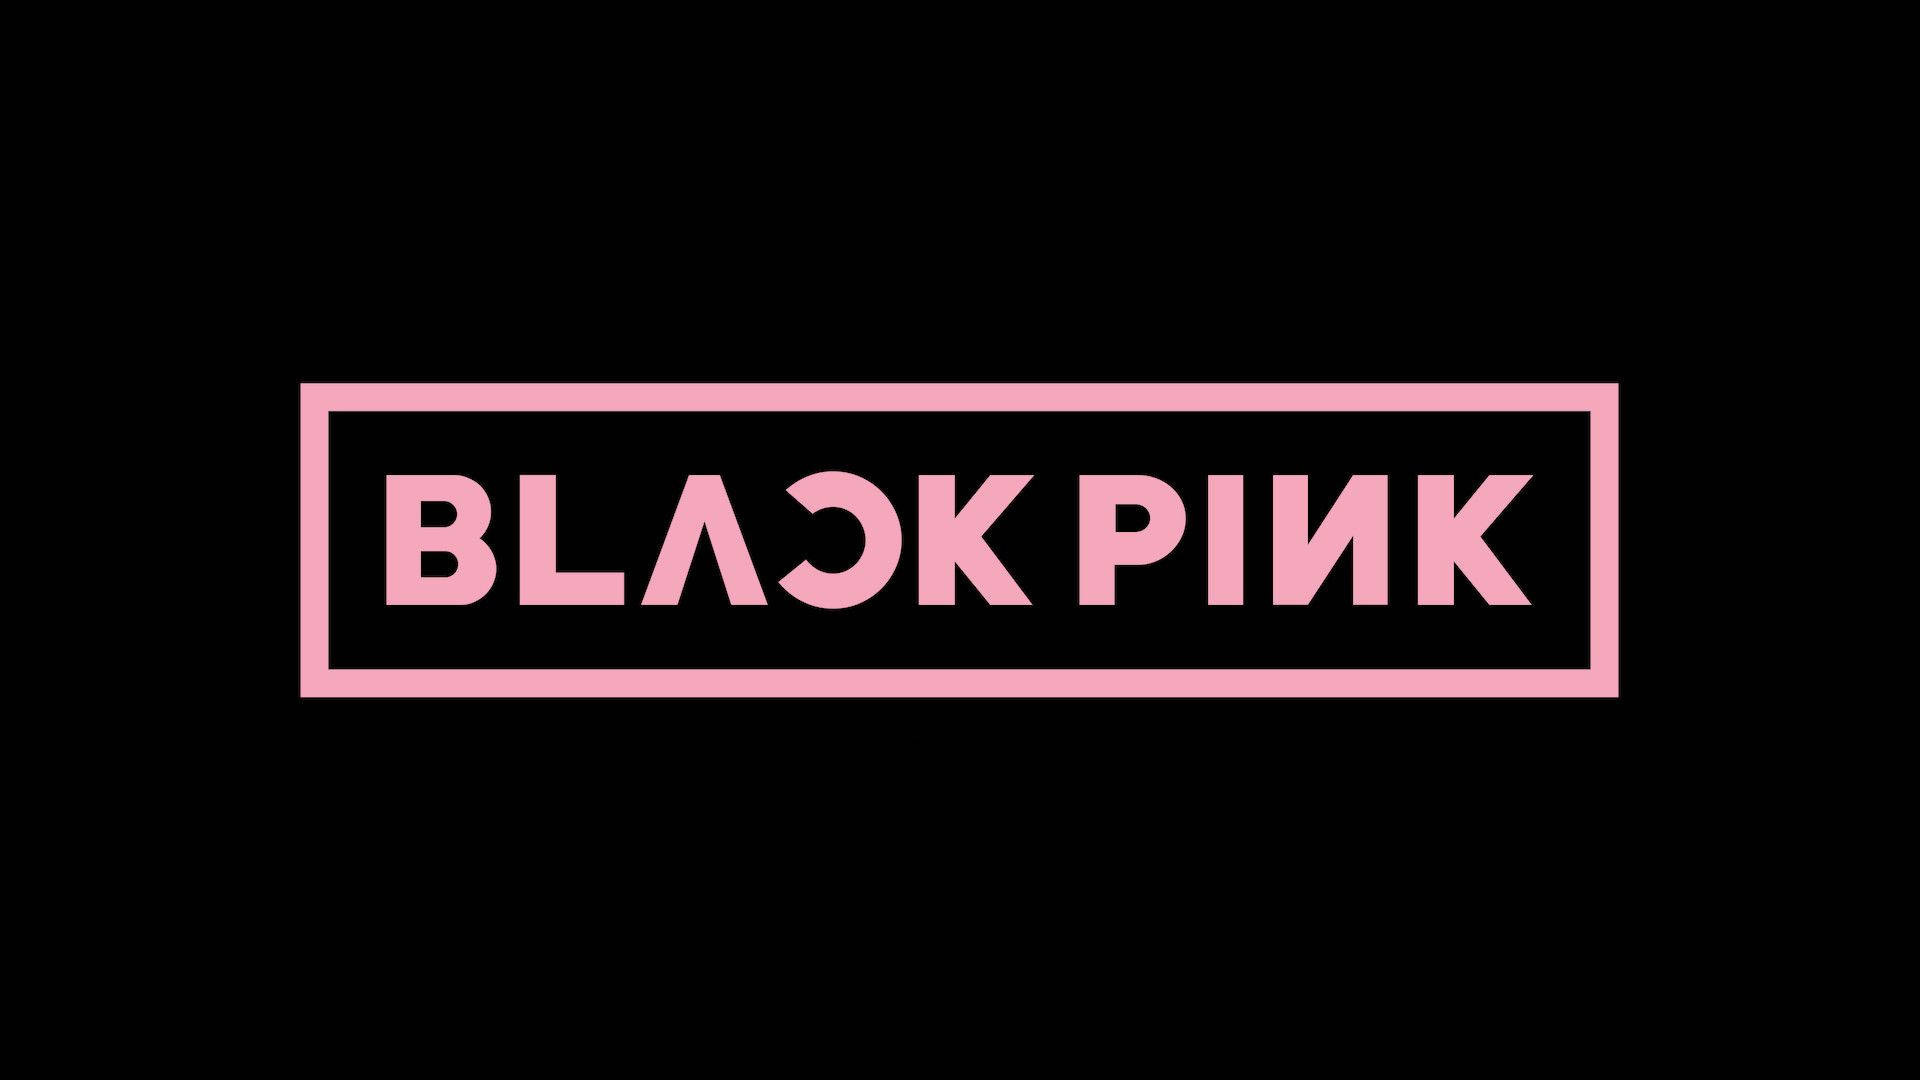 Original Blackpink Logo On Black Background